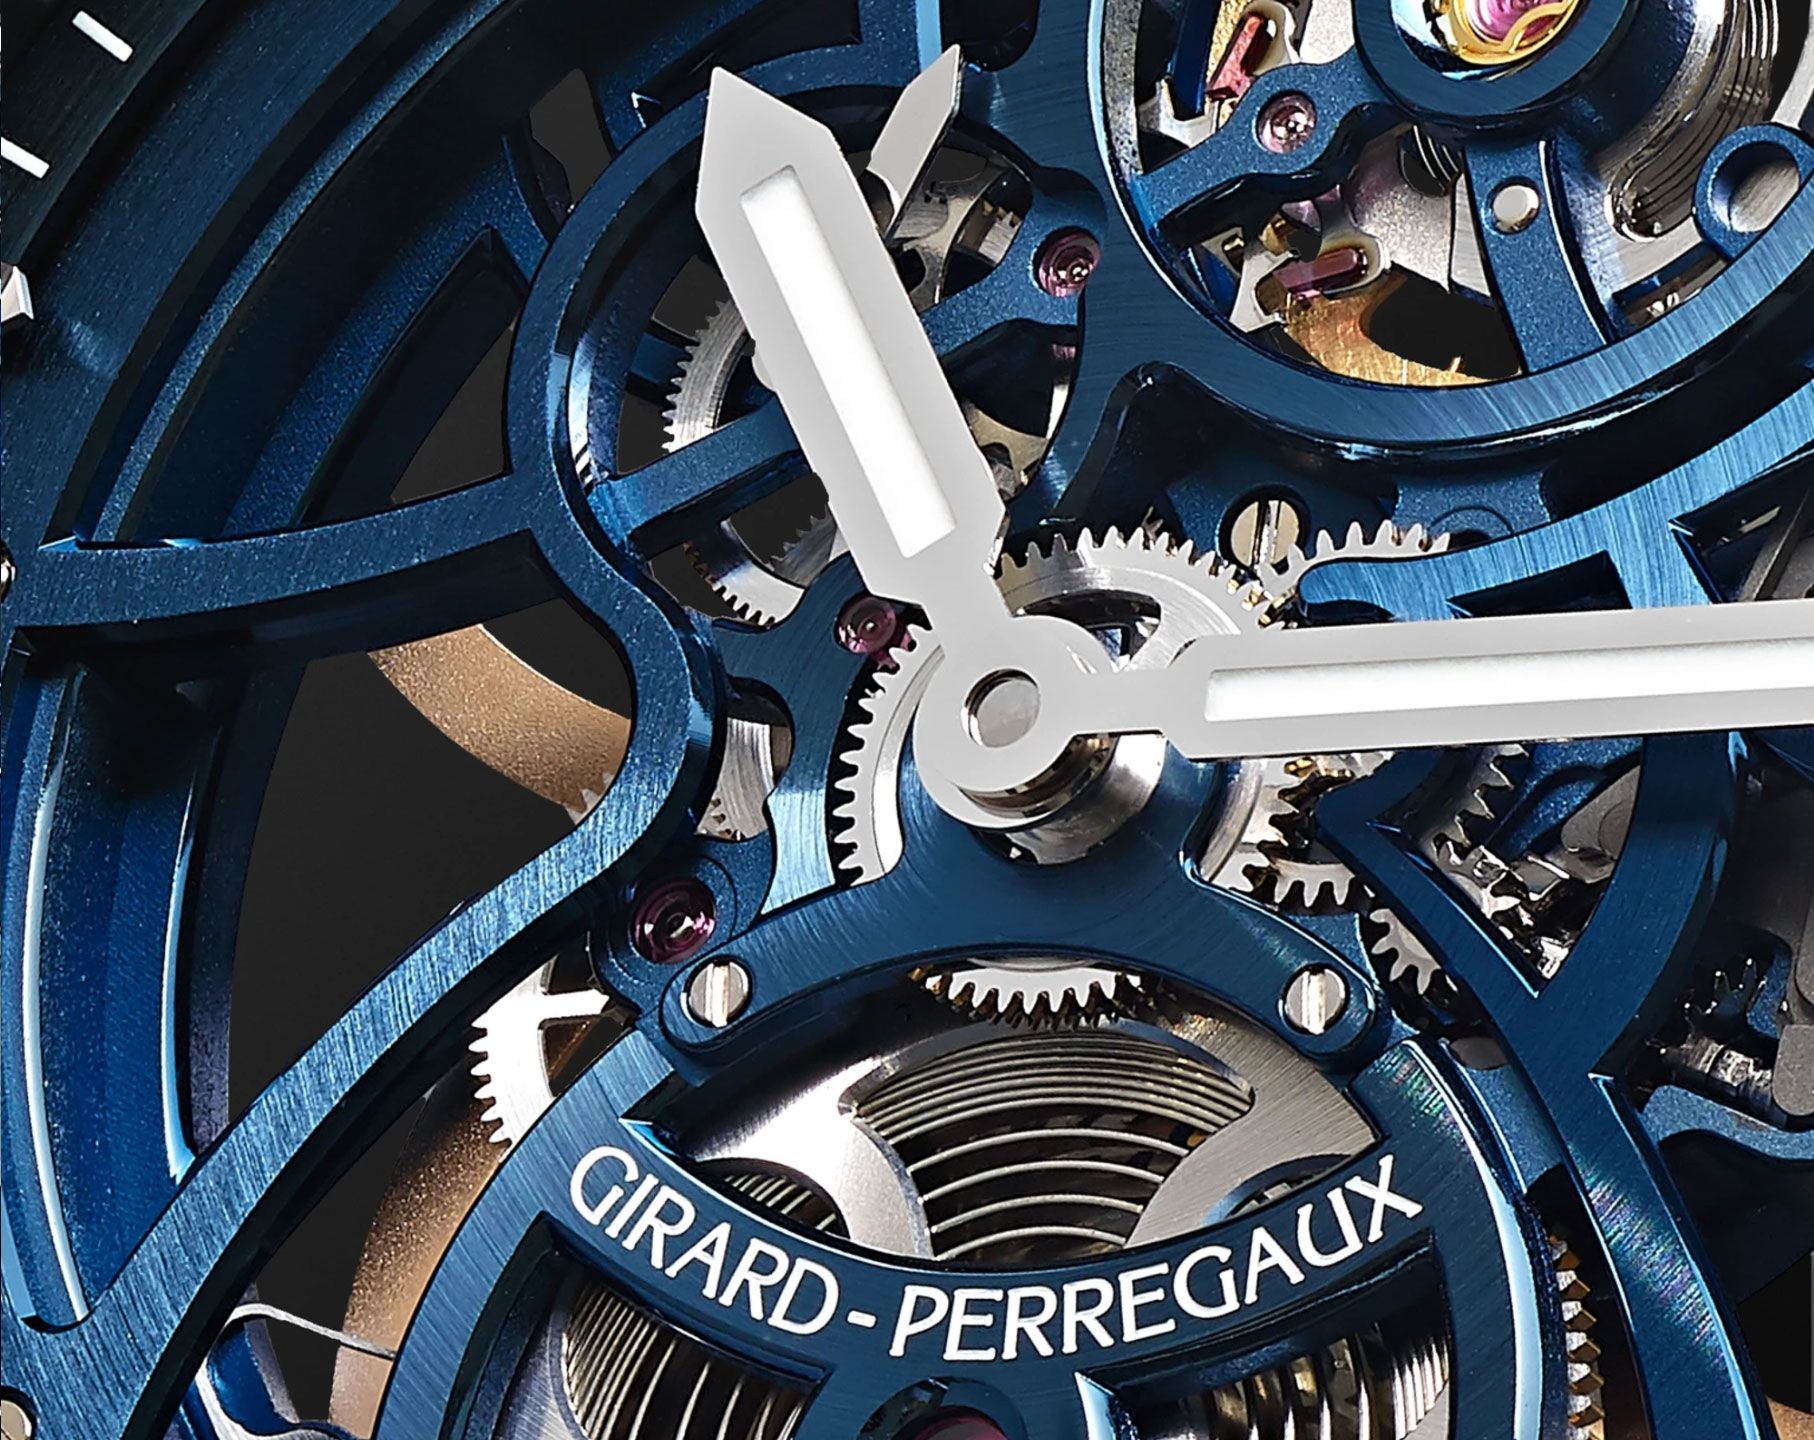 Girard-Perregaux Skeleton 42 mm Watch in Skeleton Dial For Men - 4